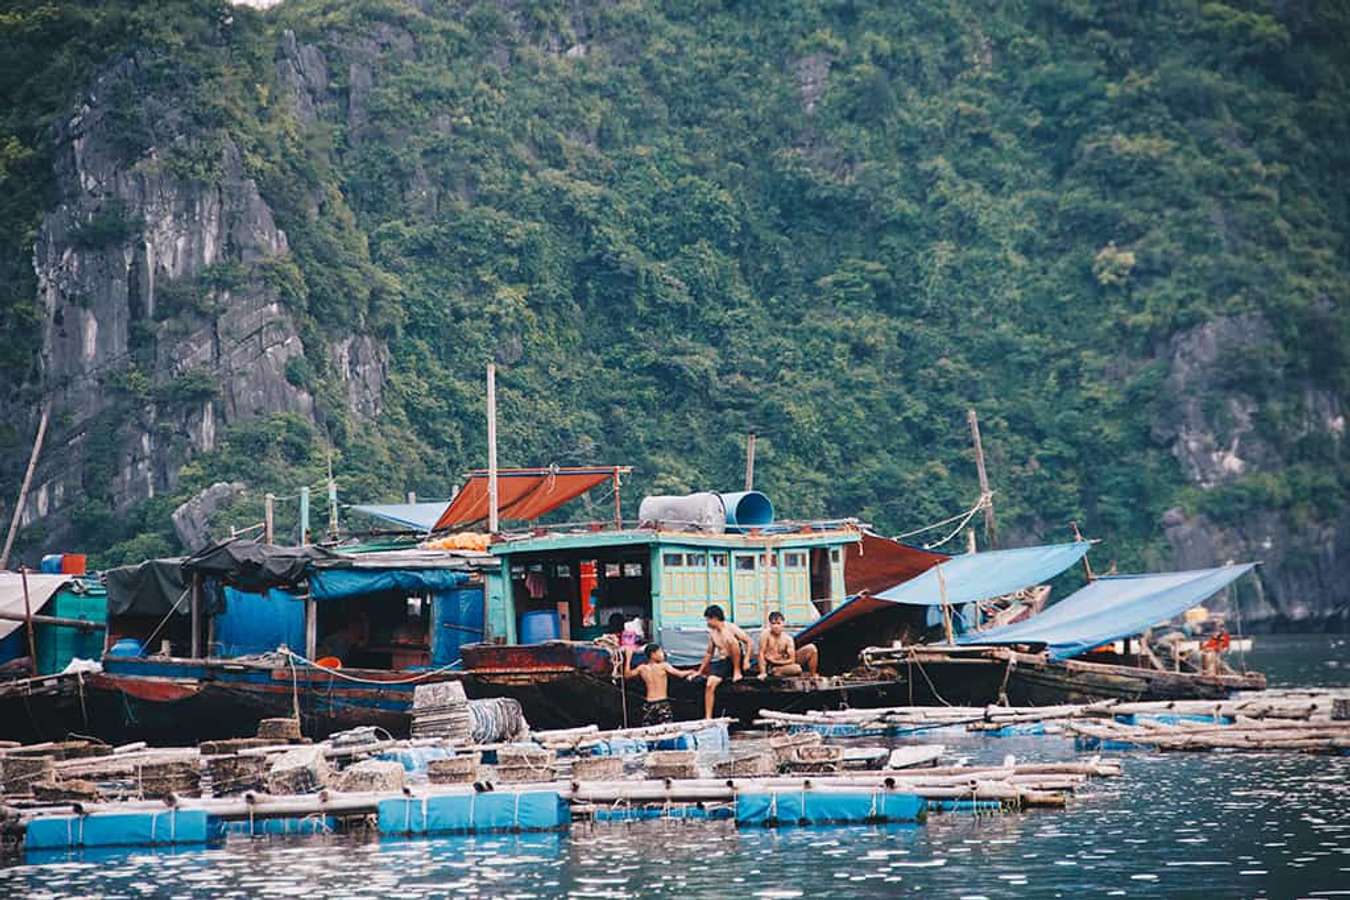 Làng chài Việt lọt top 'những ngôi làng cổ tích đẹp như tranh' trên thế giới: Có cả núi và biển, cách Hà Nội chỉ 2 giờ chạy xe - Ảnh 4.